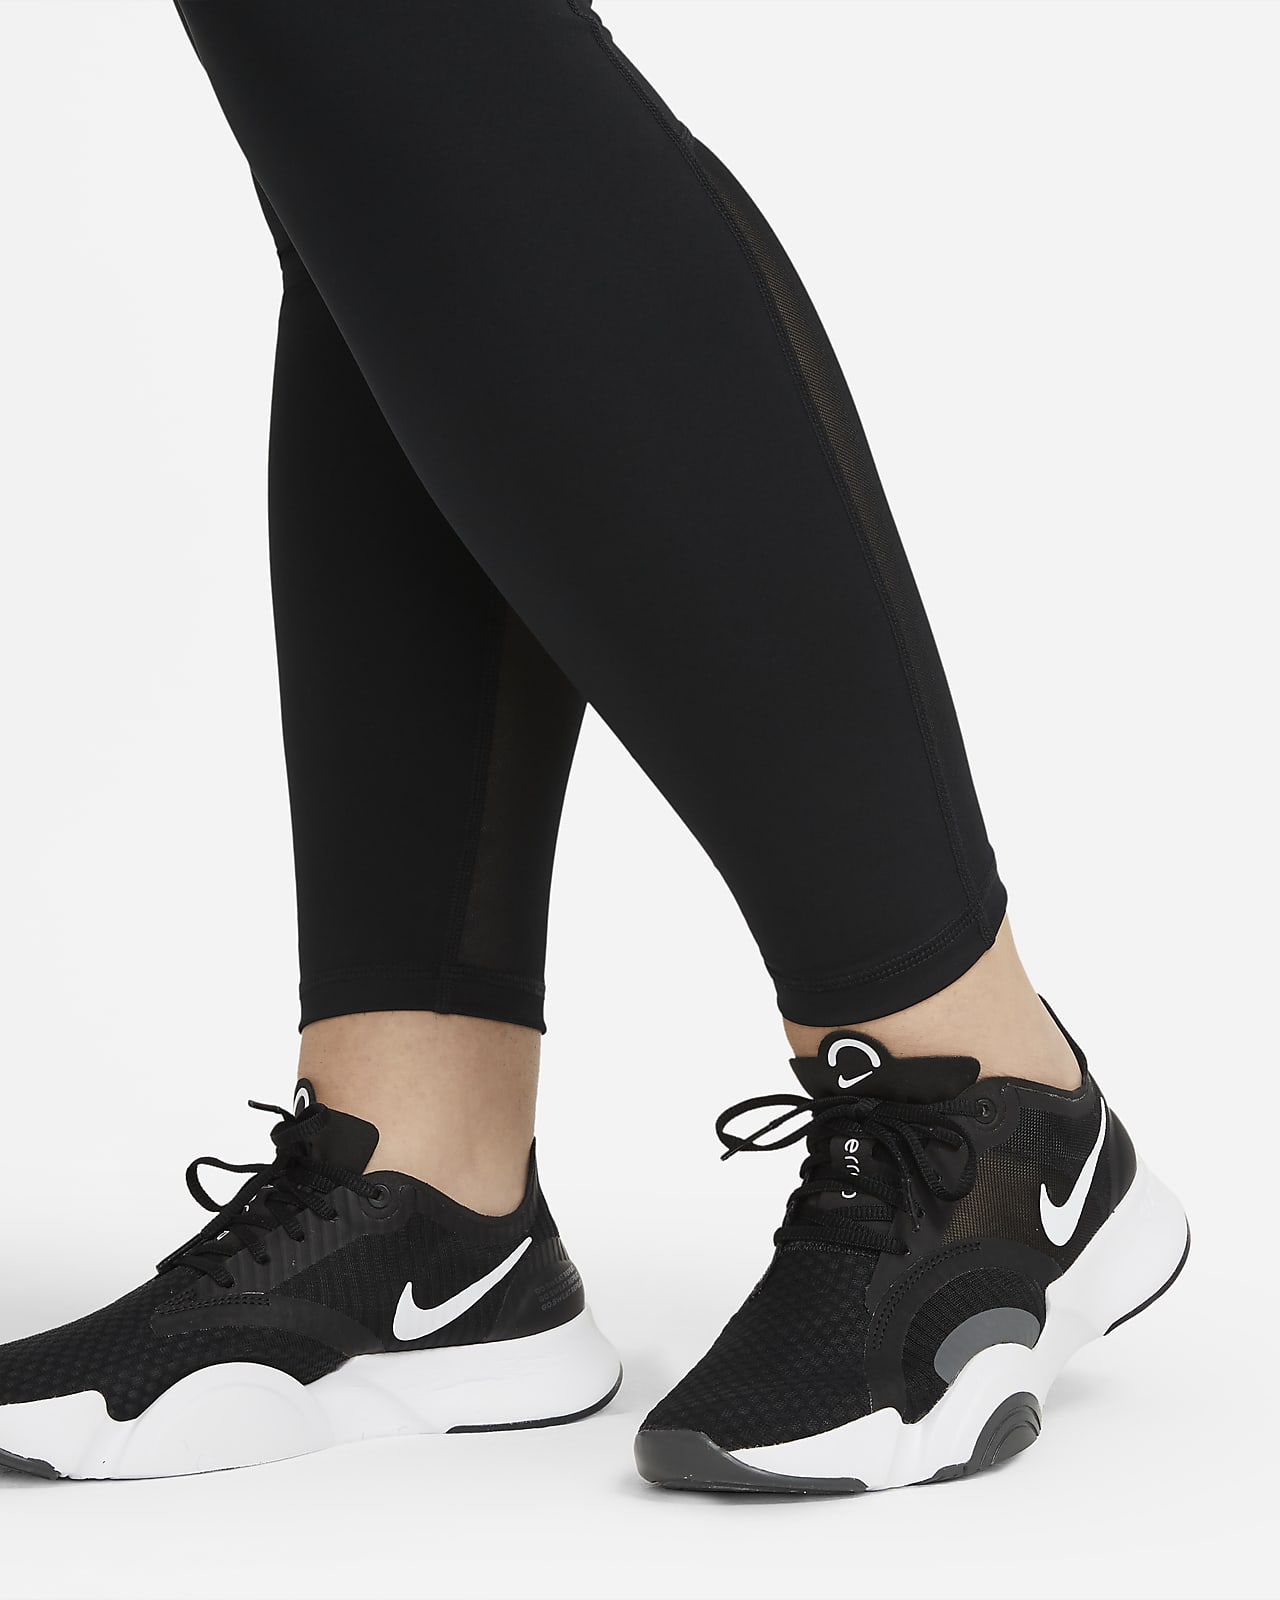 Nike Womens Nike Pro Femme Leggings - Black